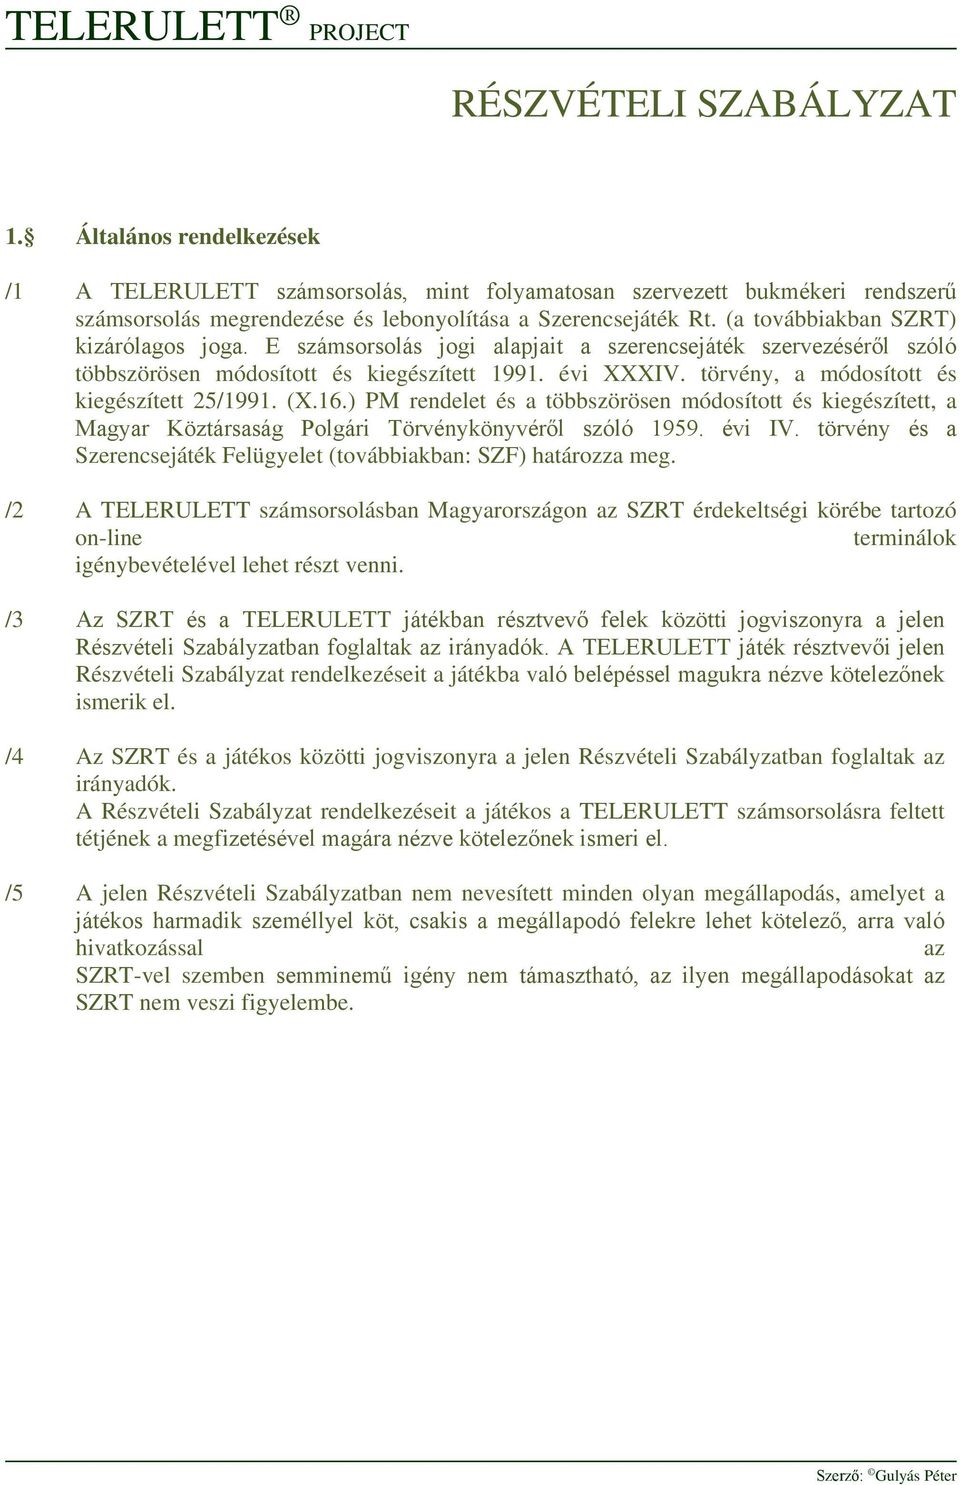 törvény, a módosított és kiegészített 25/1991. (X.16.) PM rendelet és a többszörösen módosított és kiegészített, a Magyar Köztársaság Polgári Törvénykönyvéről szóló 1959. évi IV.